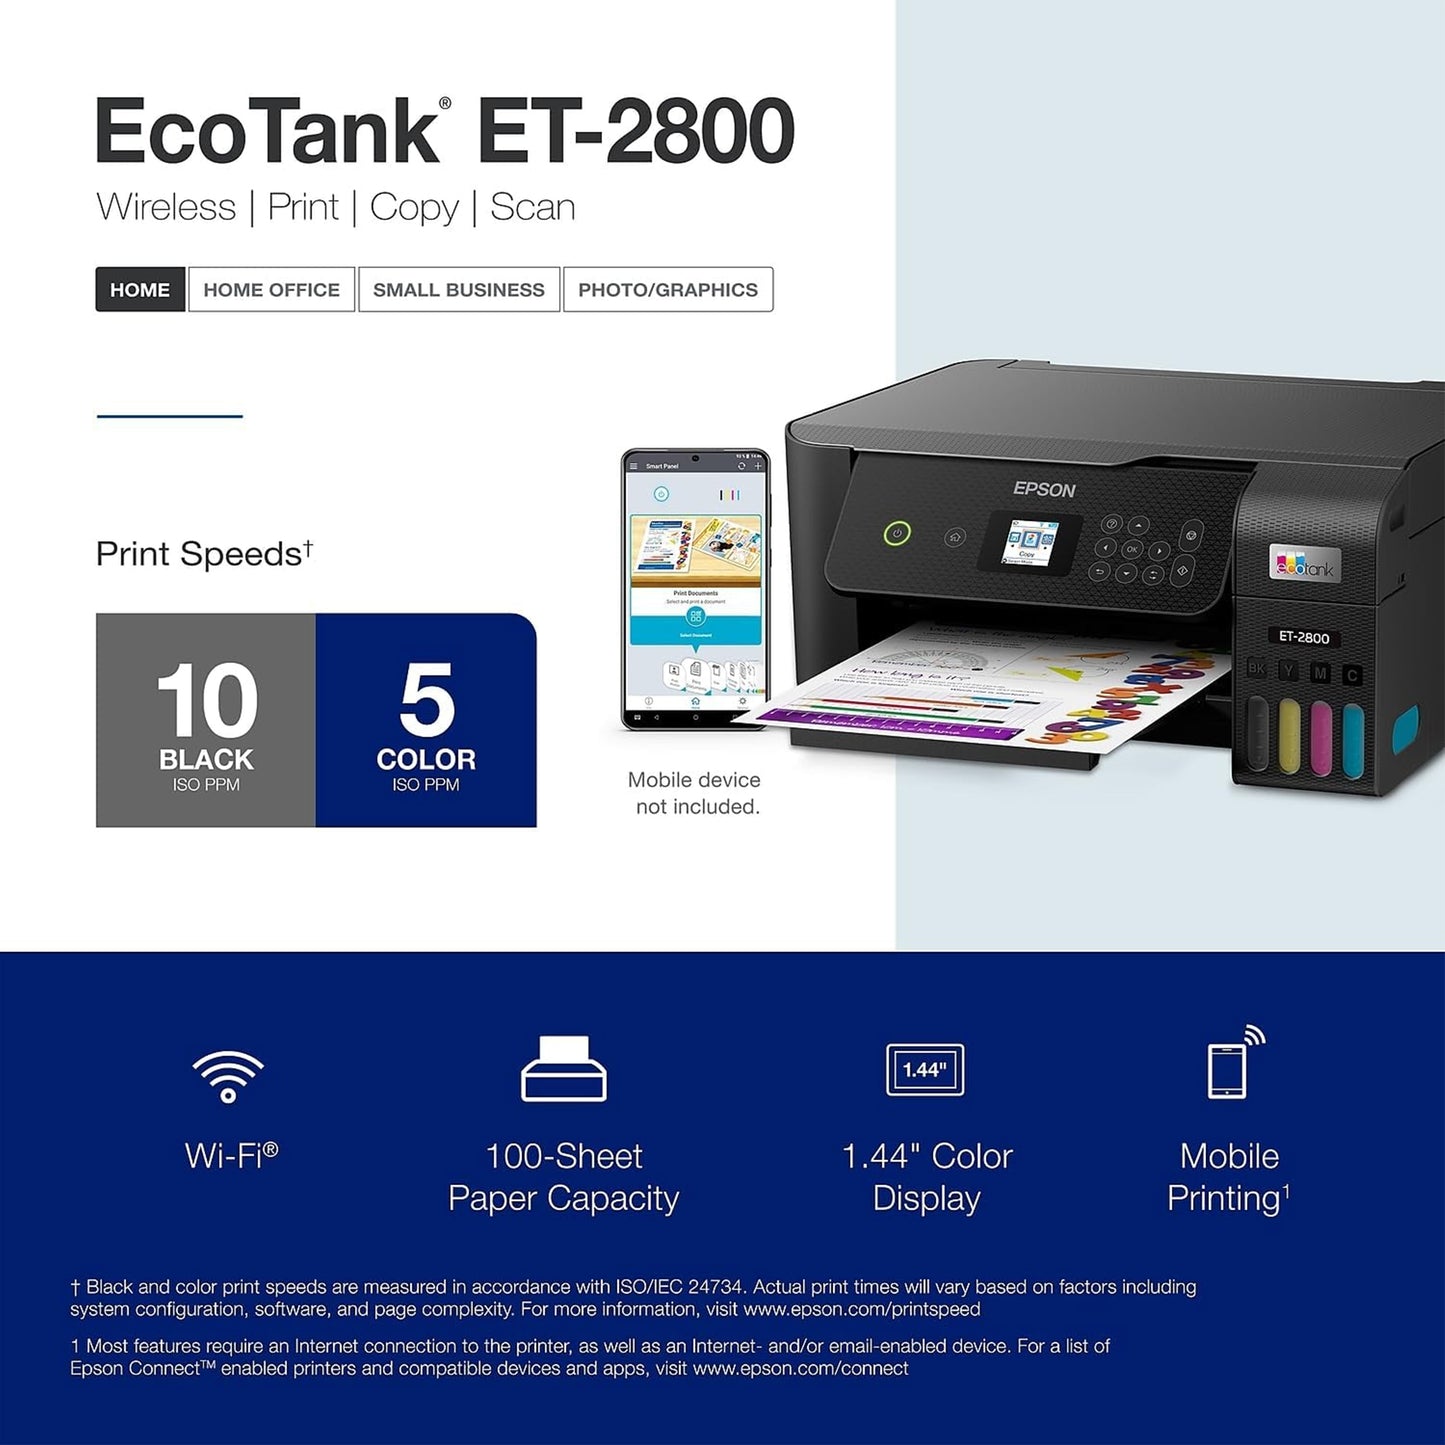 طابعة Epson EcoTank ET-2800 اللاسلكية الملونة الكل في واحد Supertank الخالية من الخراطيش مع المسح الضوئي والنسخ - الطابعة المنزلية الأساسية المثالية - أسود، متوسط 